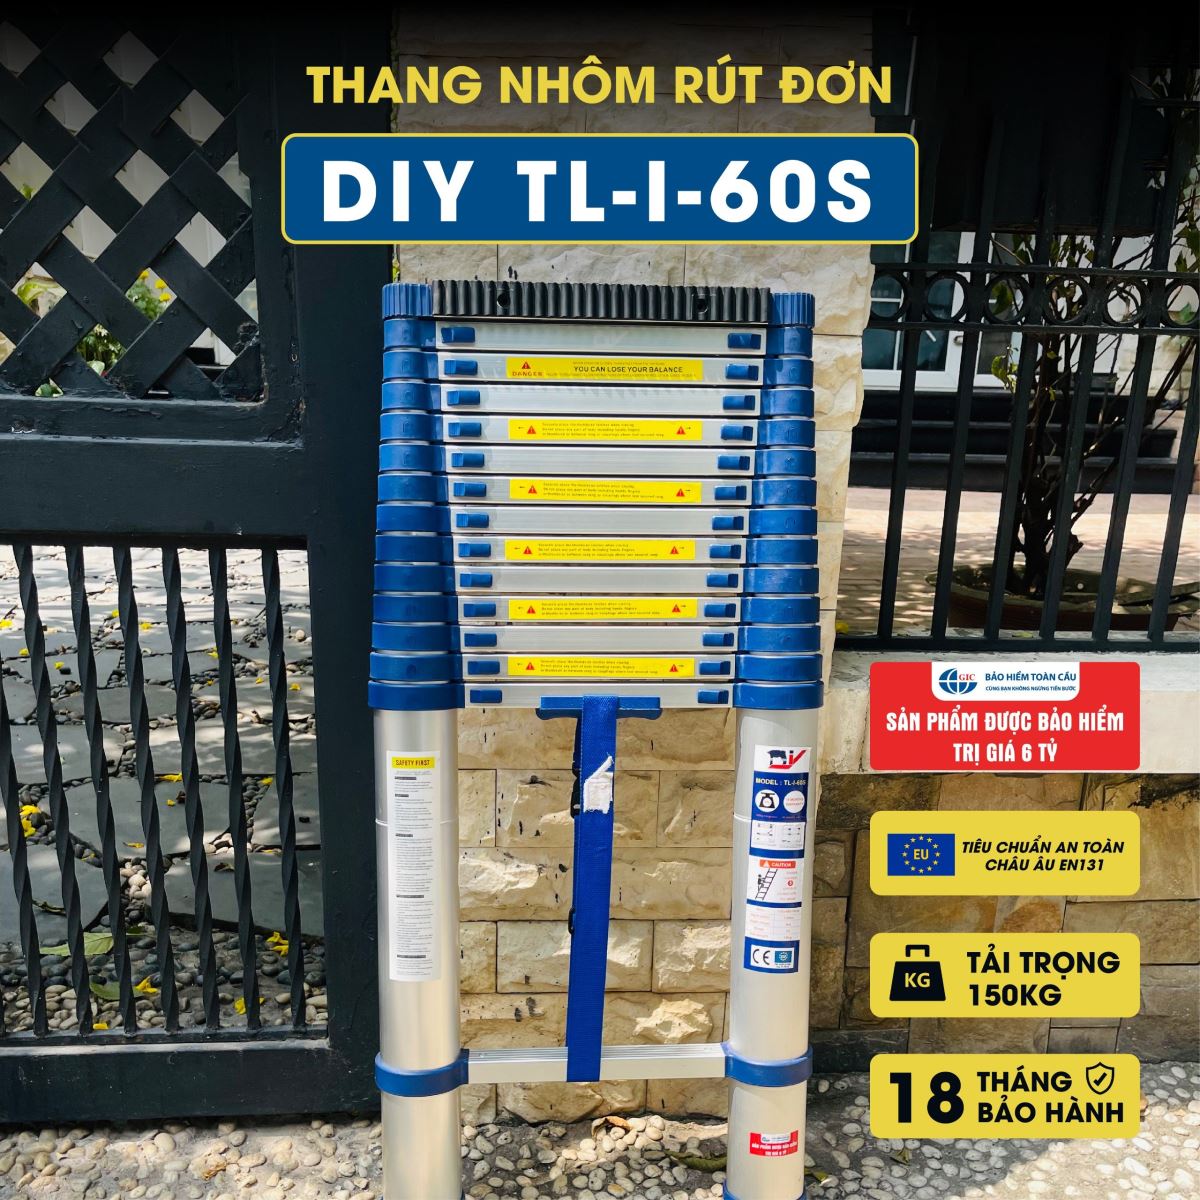 Thang nhôm rút đơn DIY TL-I-60S